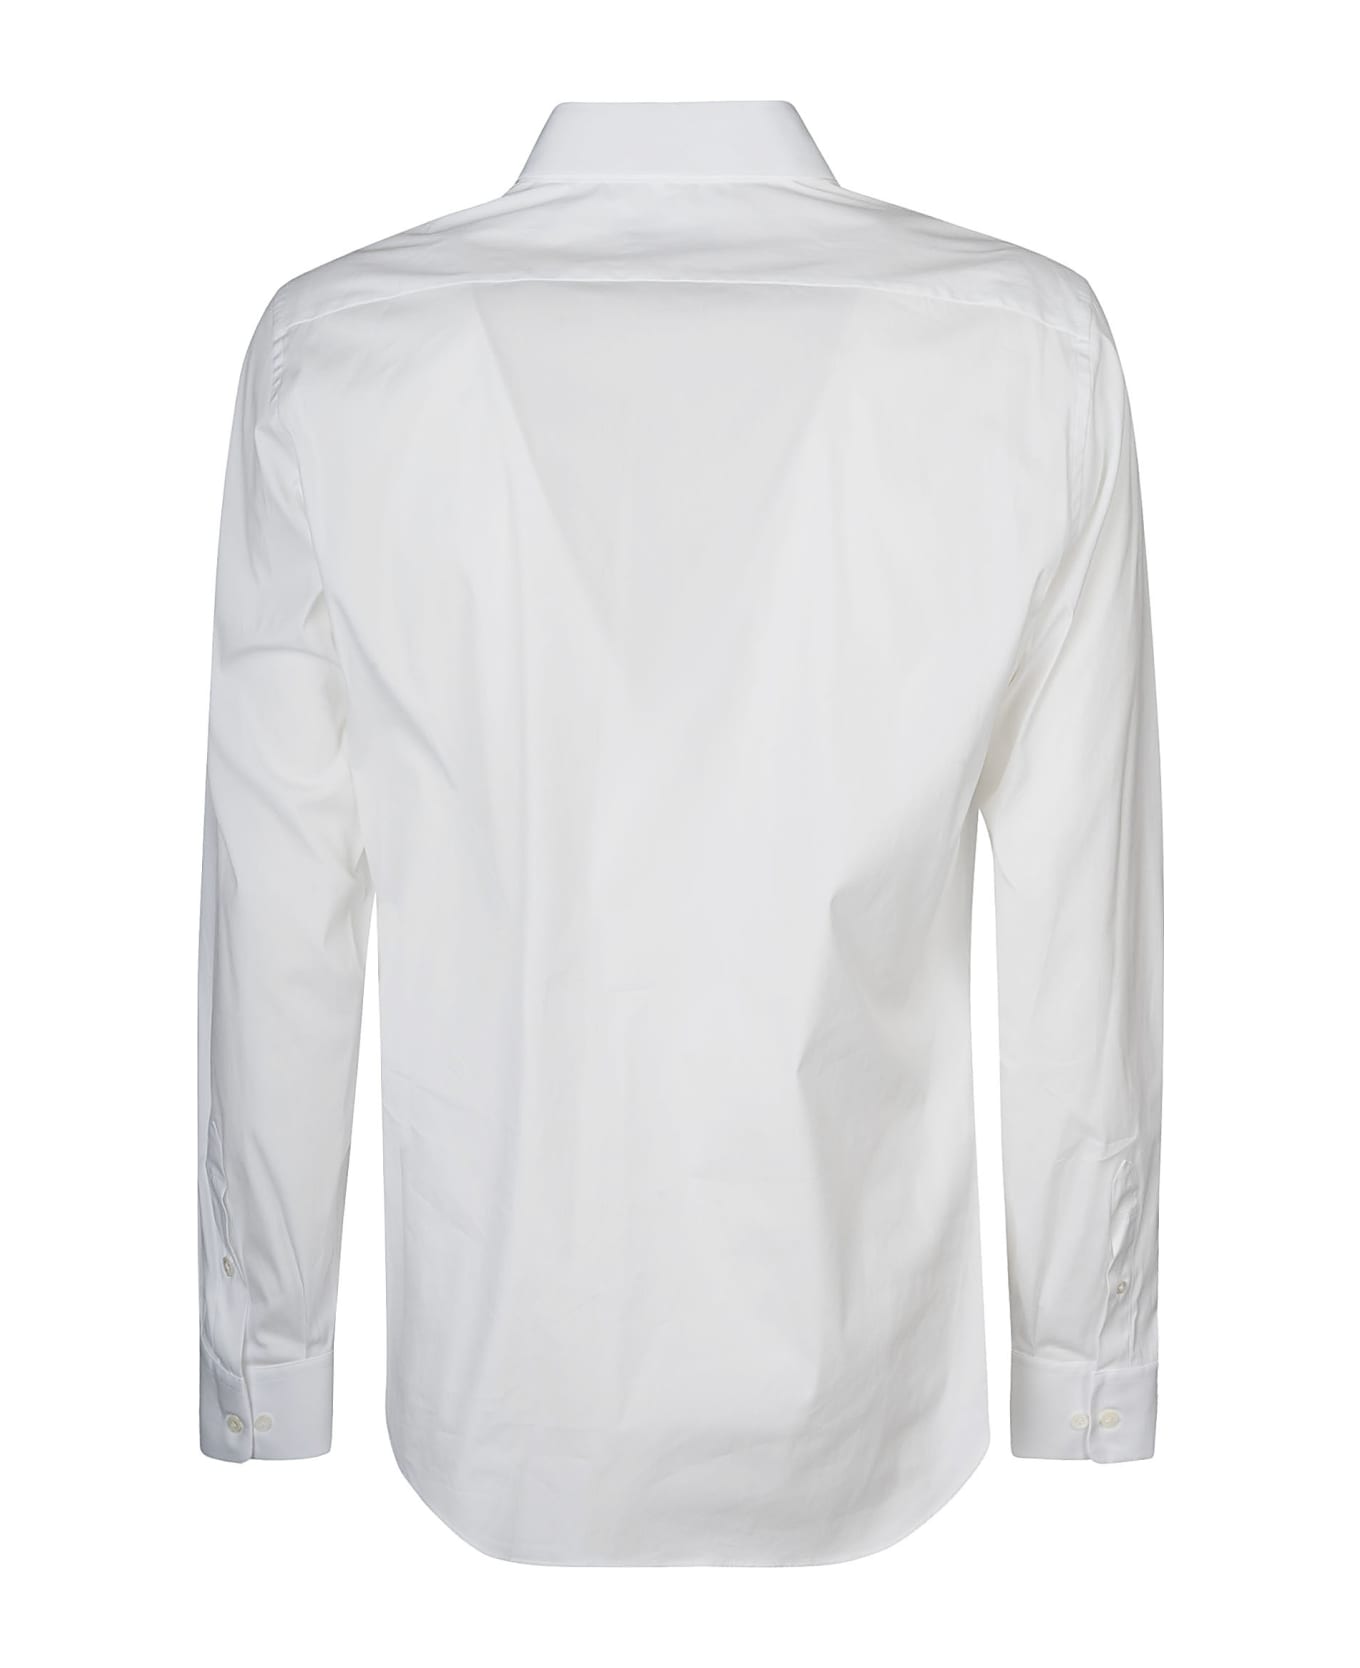 Lanvin Round Hem Plain T-shirt - Bianco シャツ